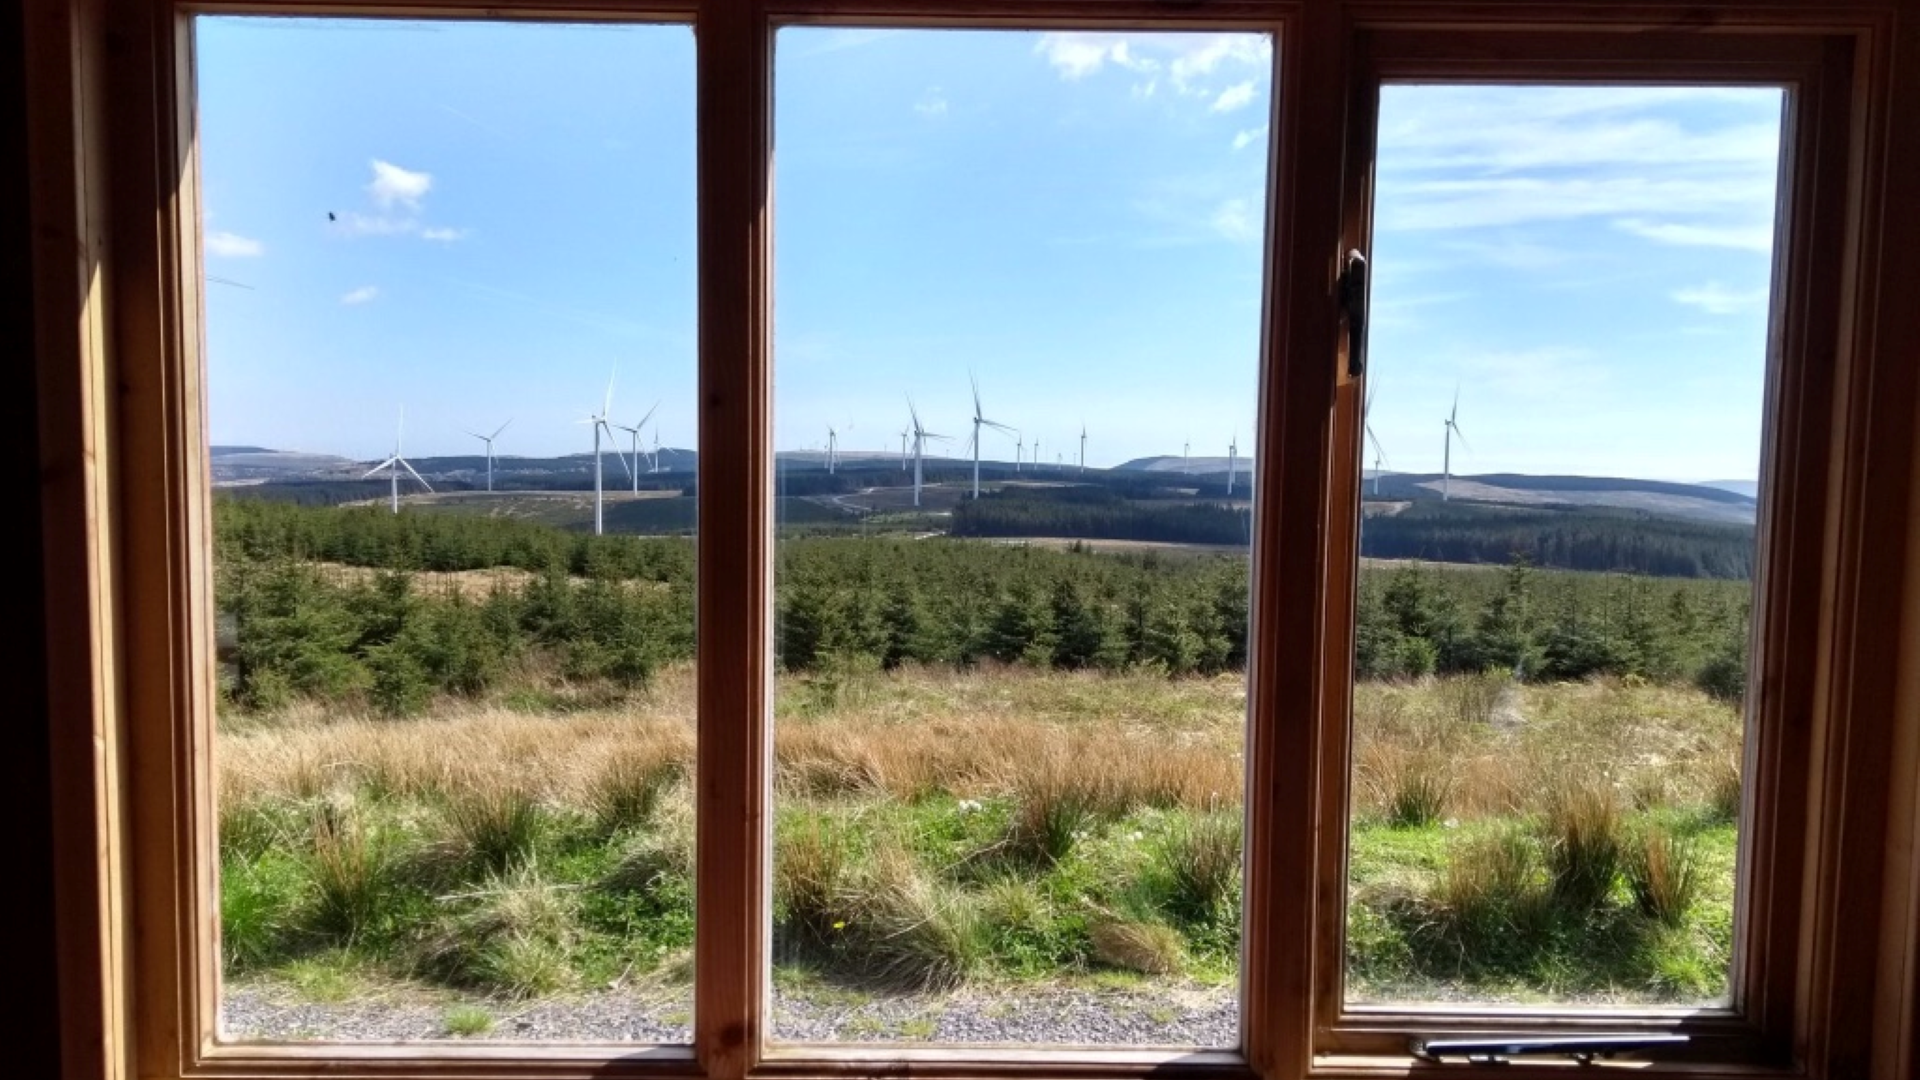 Pen y Cymoedd Wind Farm 